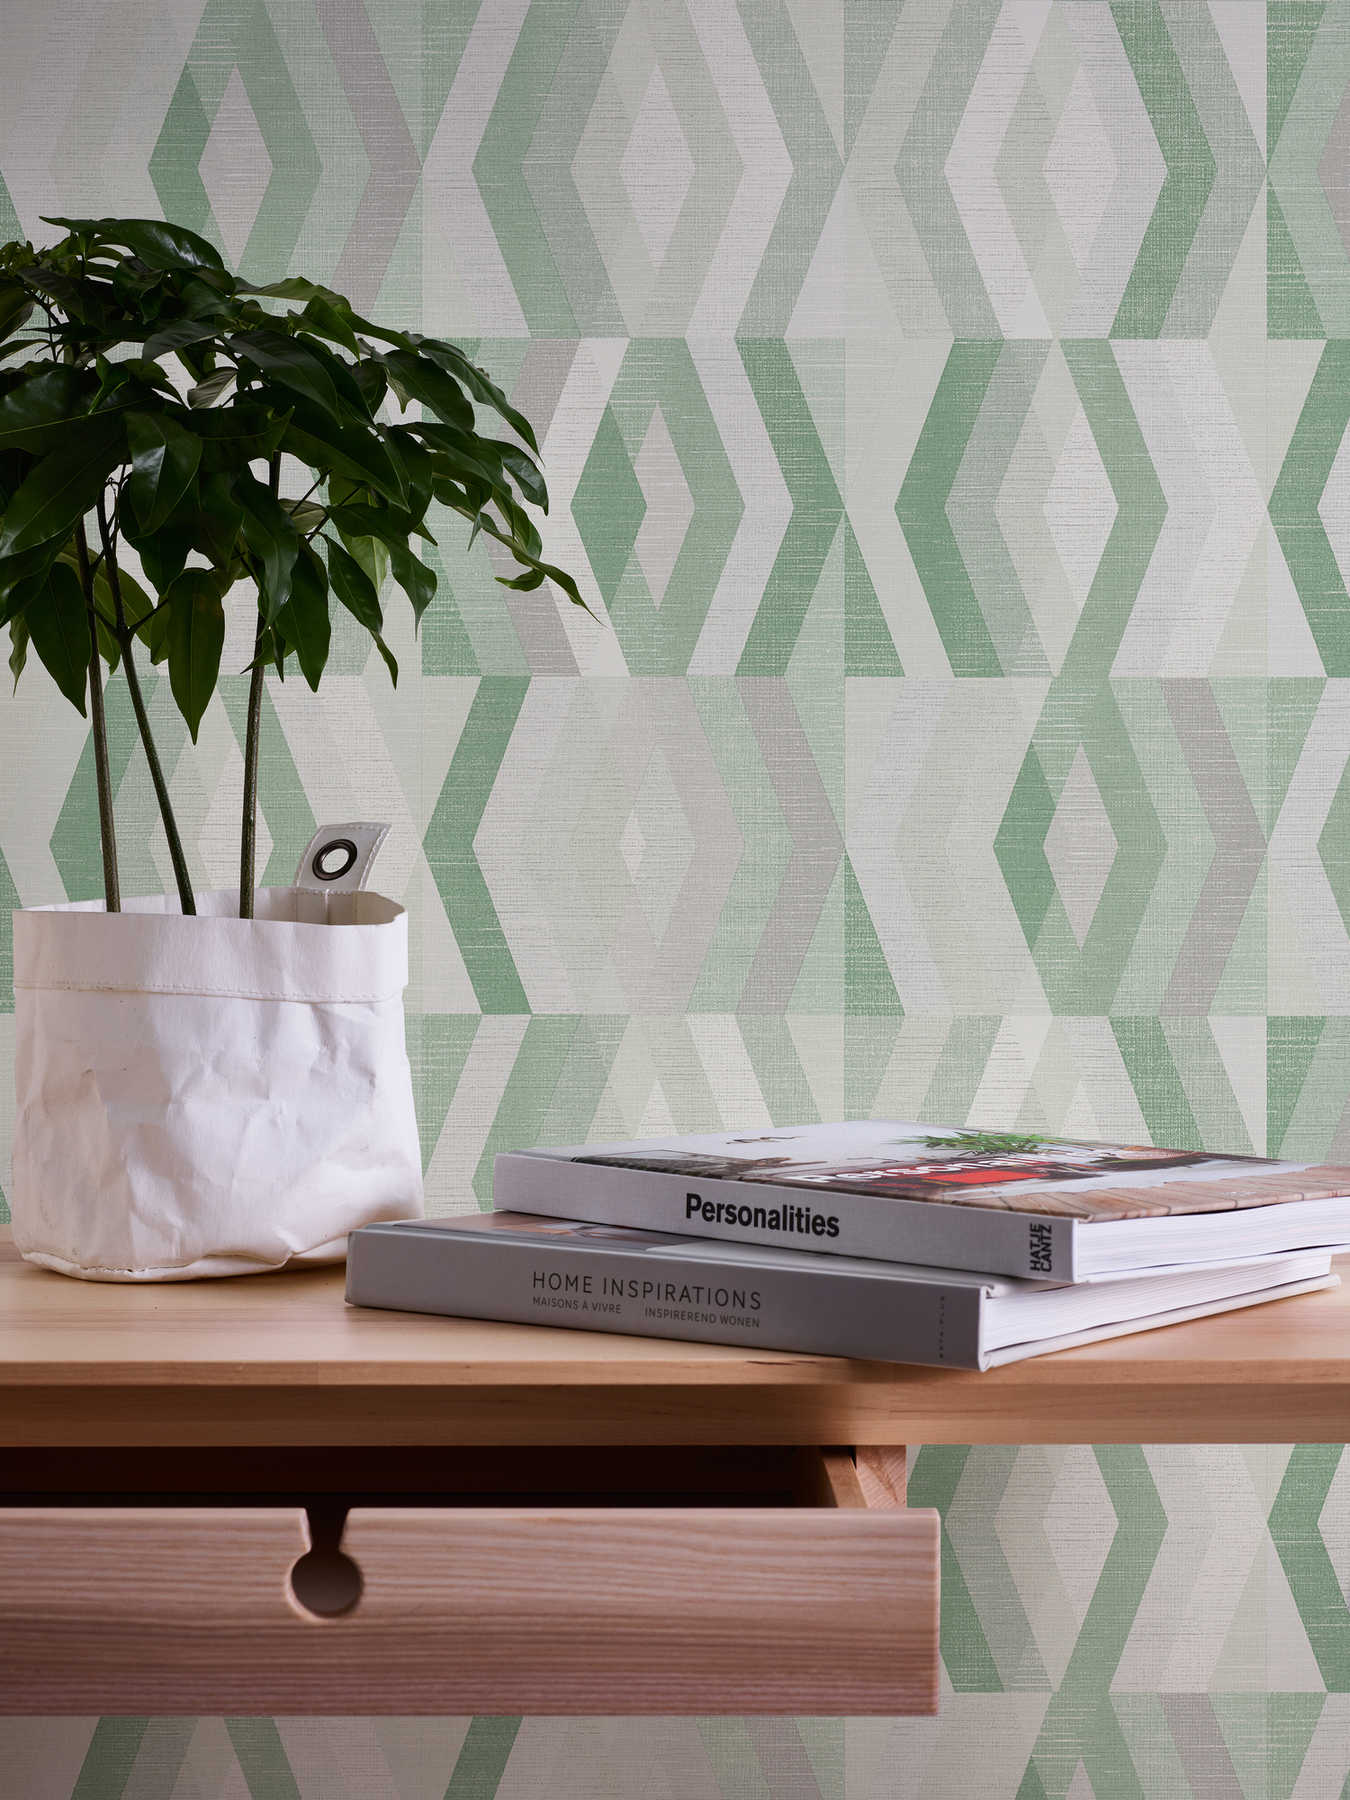             Tapete Scandinavian Stil mit geometrischem Muster - Grün, Grau
        